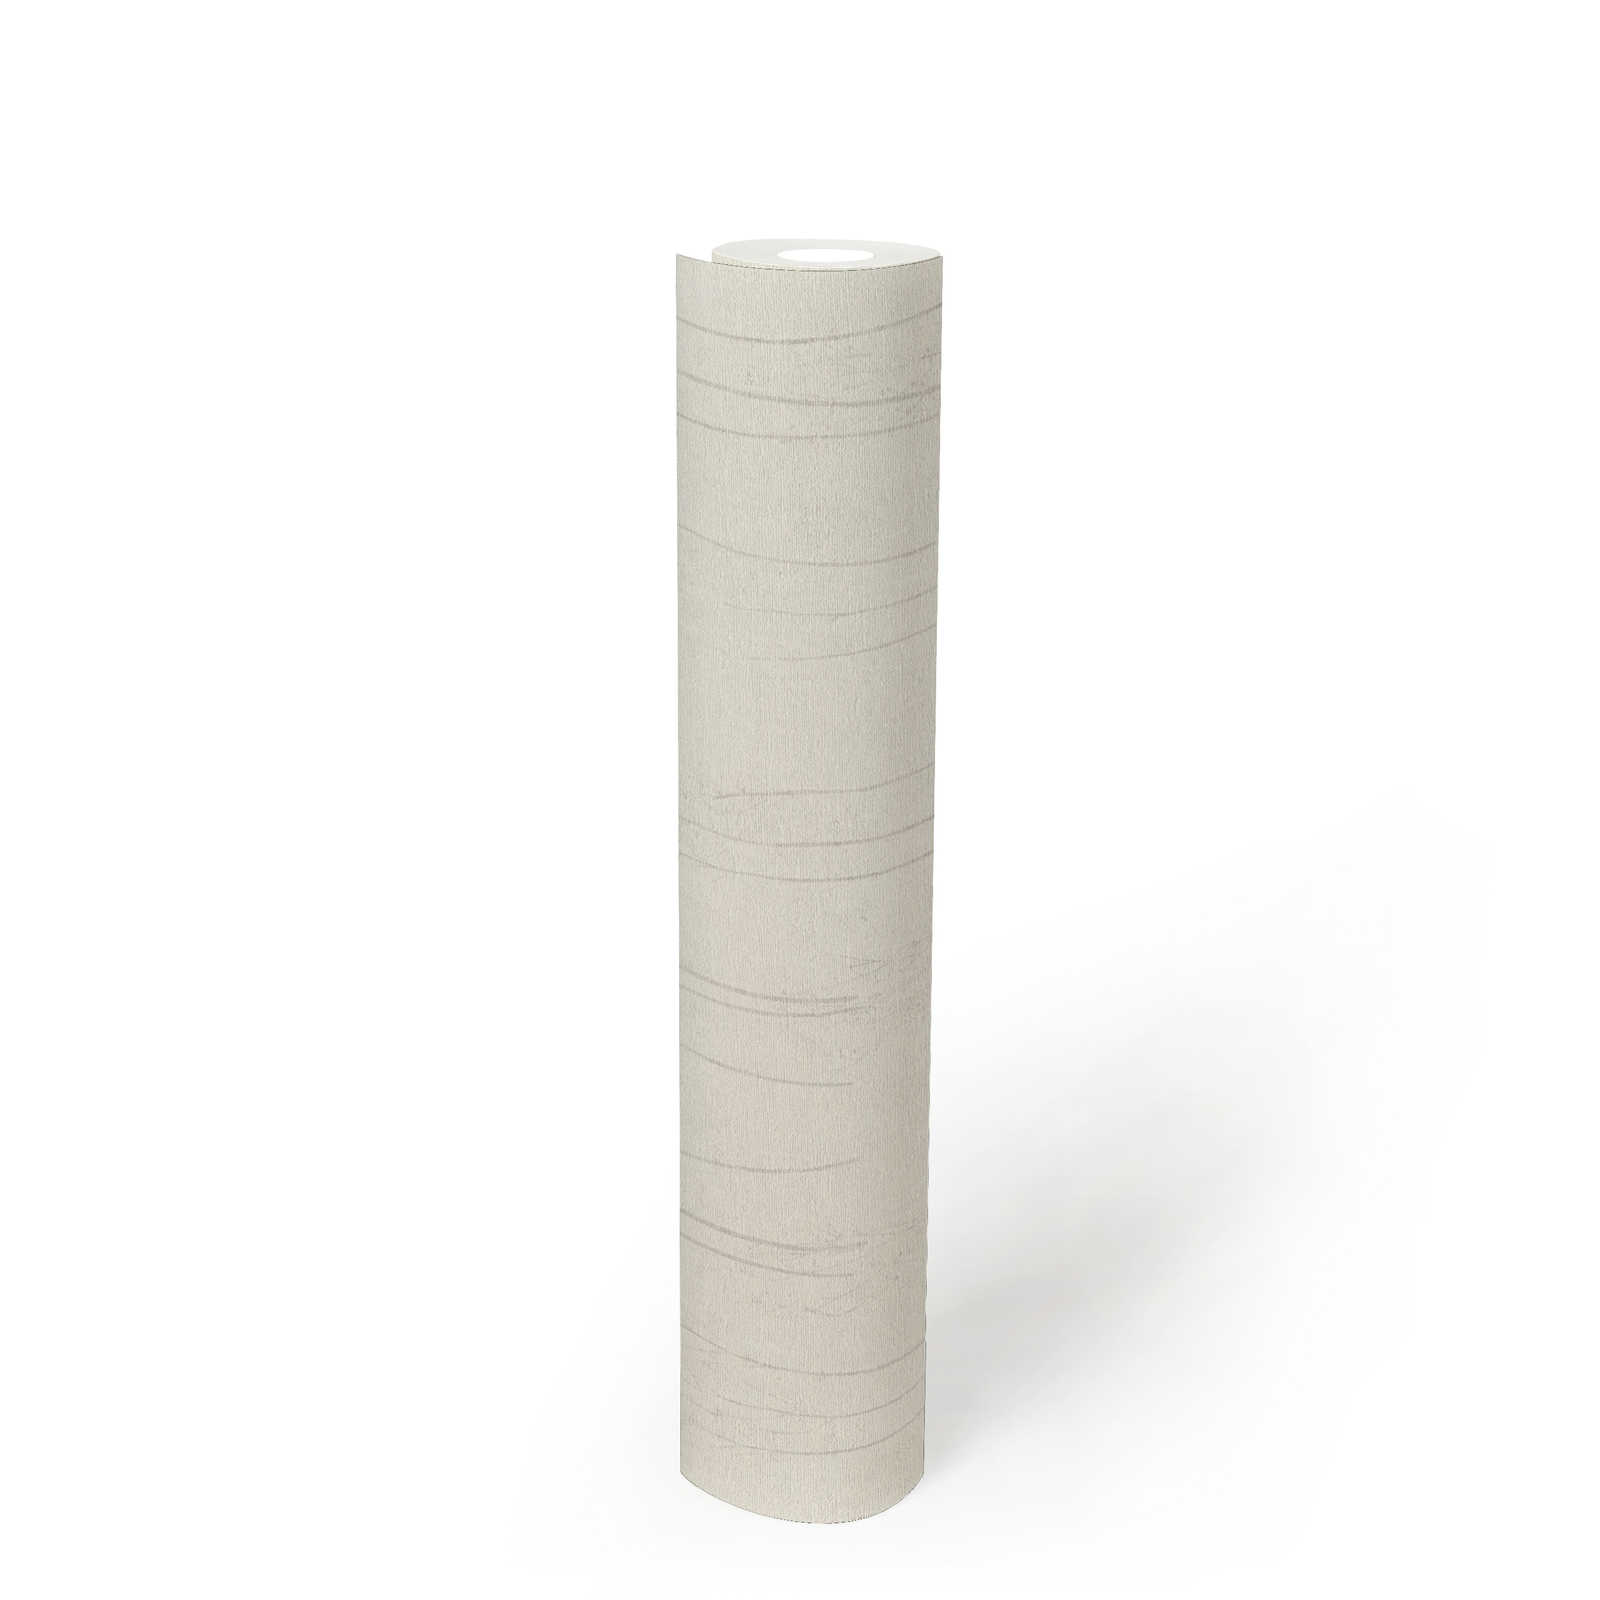             Weiße Tapete Scandi Stil mit Naturmuster – Grau, Weiß
        